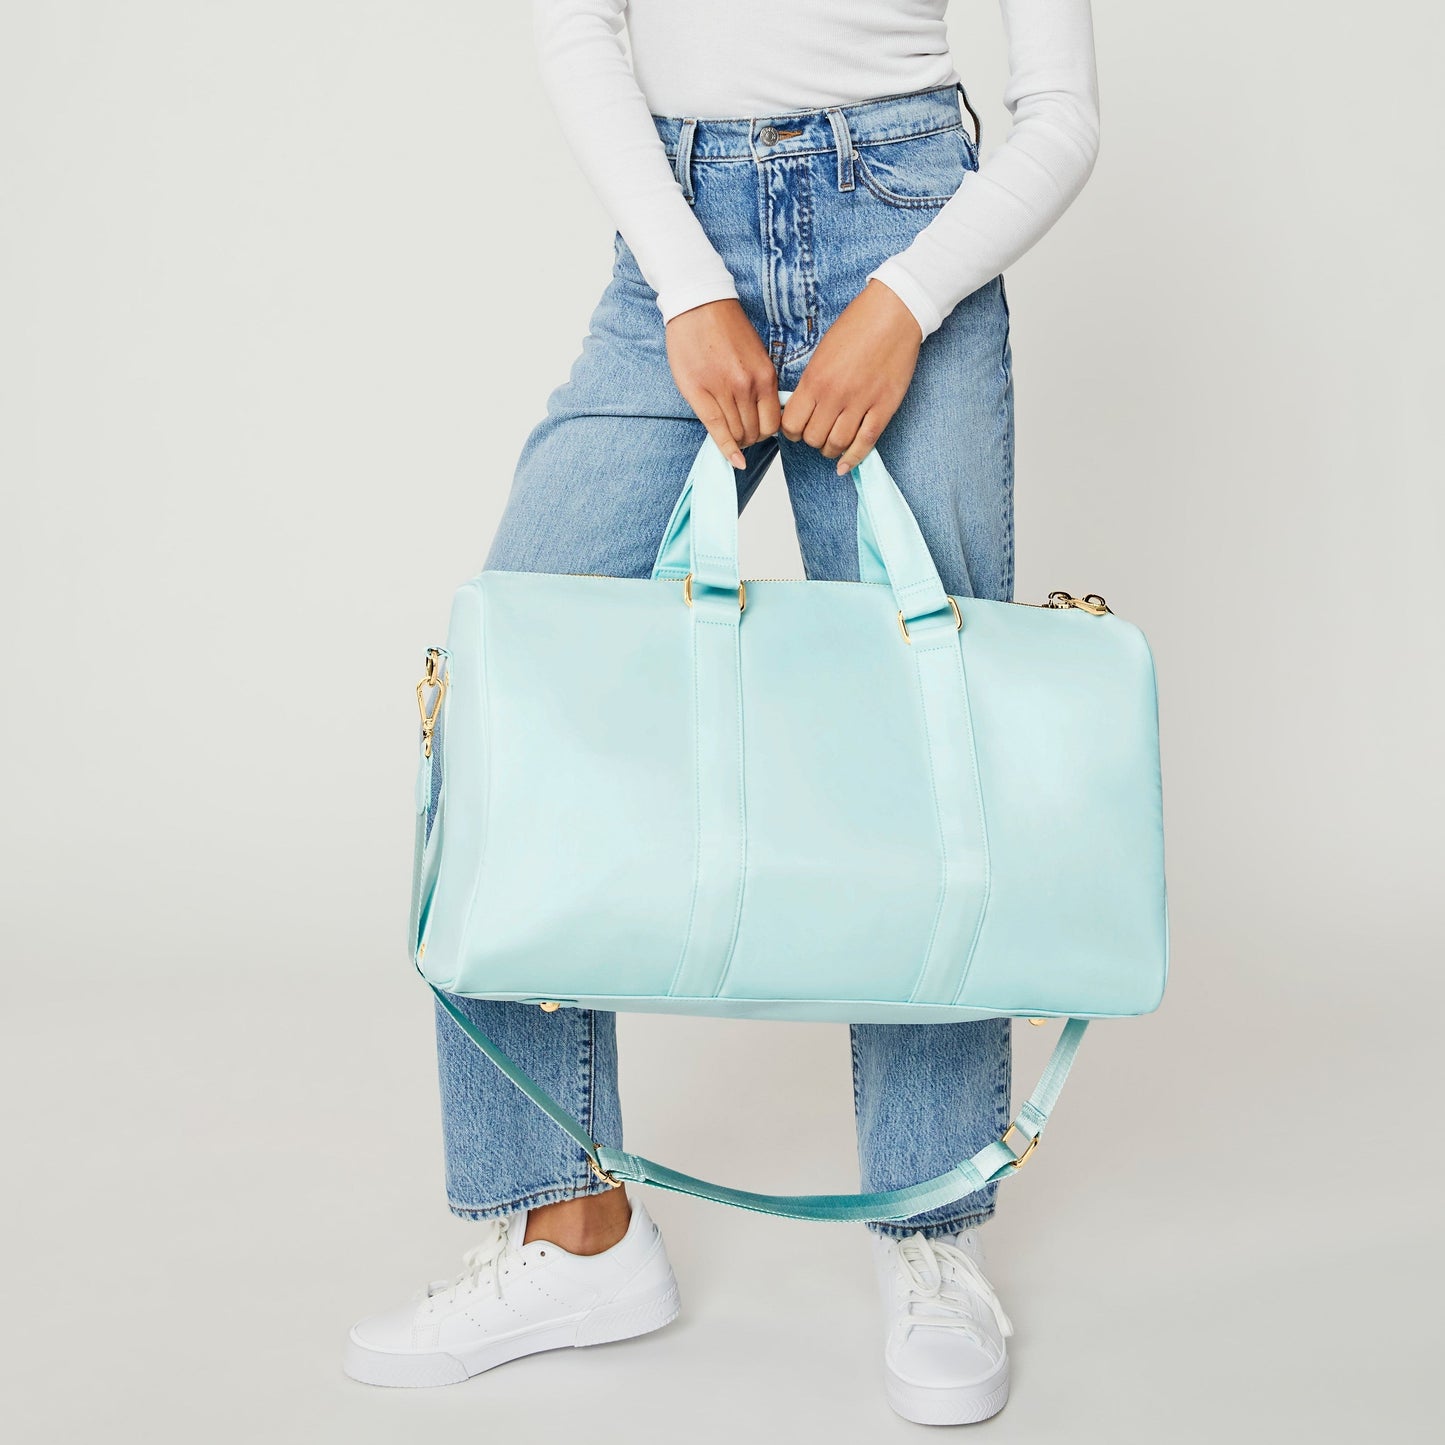 Duffle Bag & Weekender Bag